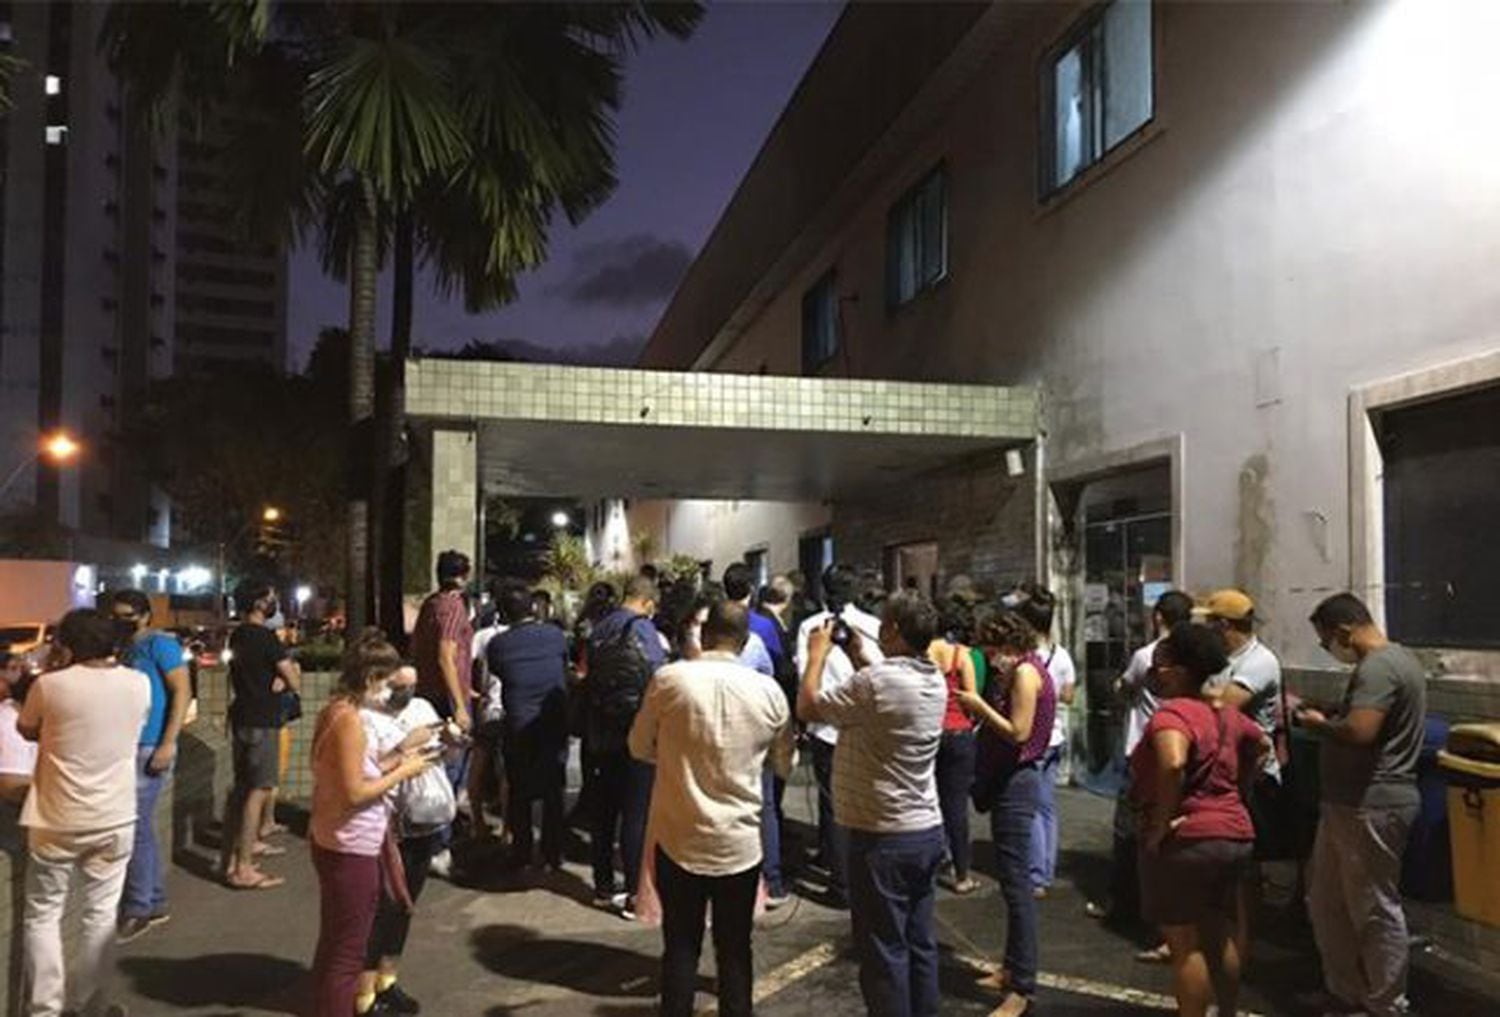 Fundamentalistas religiosos se reuniram para protestar em frente ao hospital onde menina de 10 anos era atendida, no Recife.